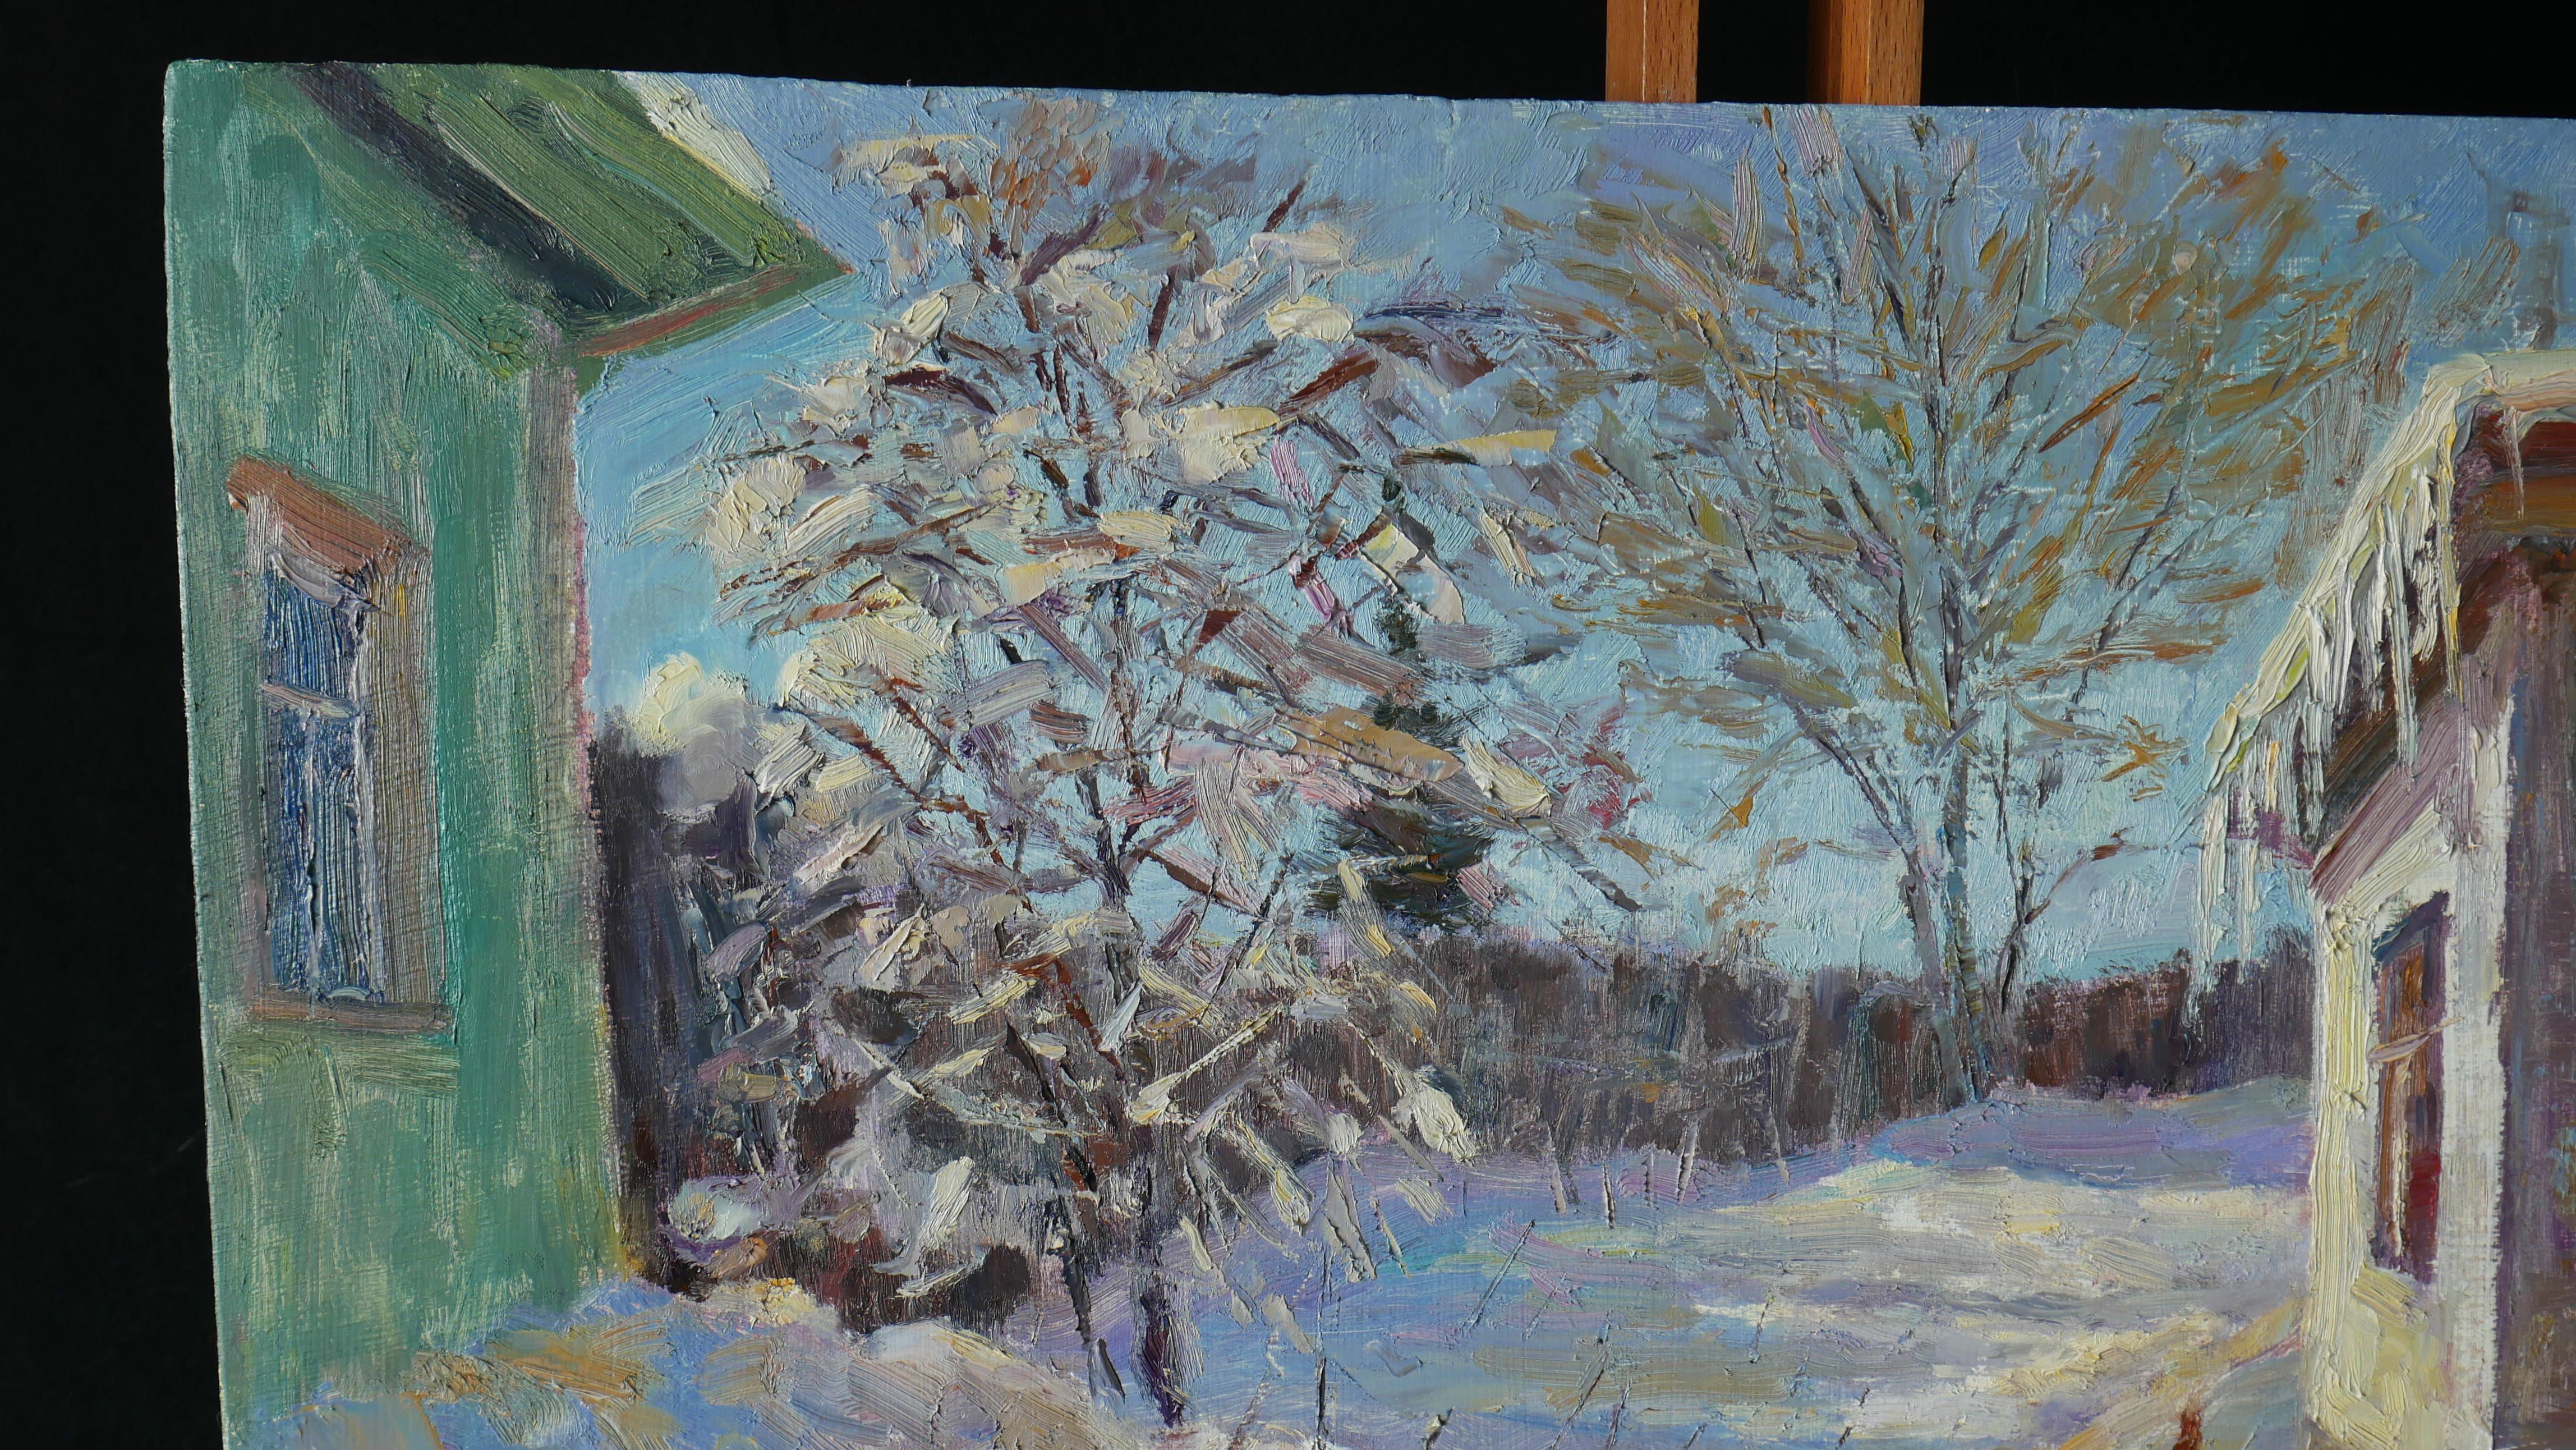 Ein impressionistisches Schneegemälde ist voll von Sonnenlicht und positiver Energie.
Der letzte Schnee reflektiert die hellen Strahlen der warmen Sonne, wodurch verschiedene Violett-, Blau- und Purpurtöne der Schatten entstehen.

Das Bild ist von